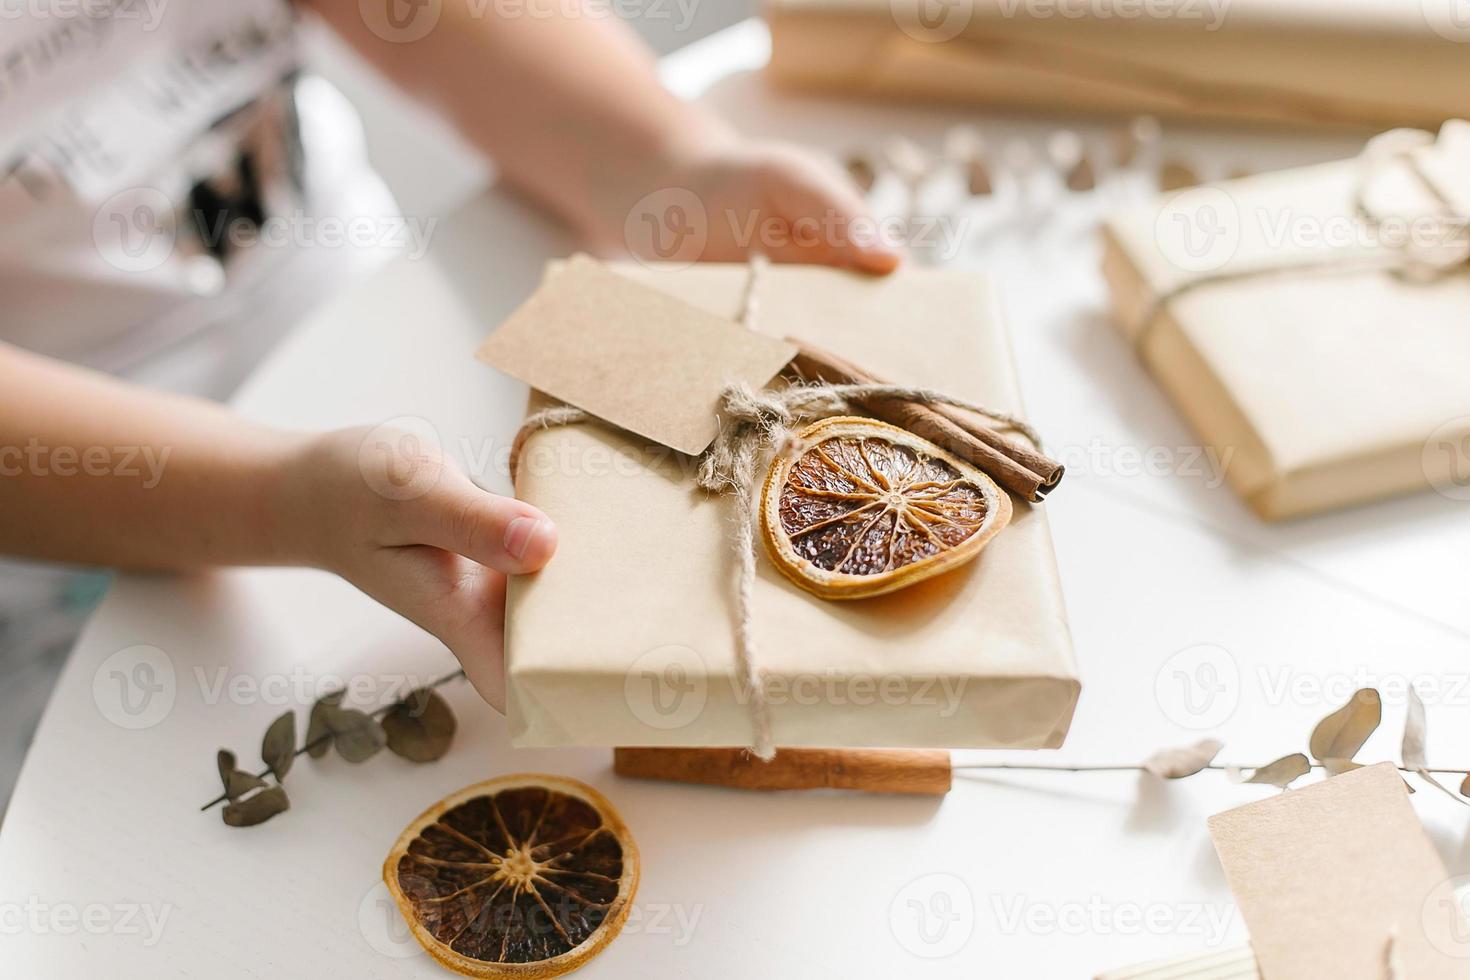 vrouw Holding een geschenk Cadeau omhulsel bruin ambacht papier en decoratie. concept van doe-het-zelf, eigengemaakt decor. foto